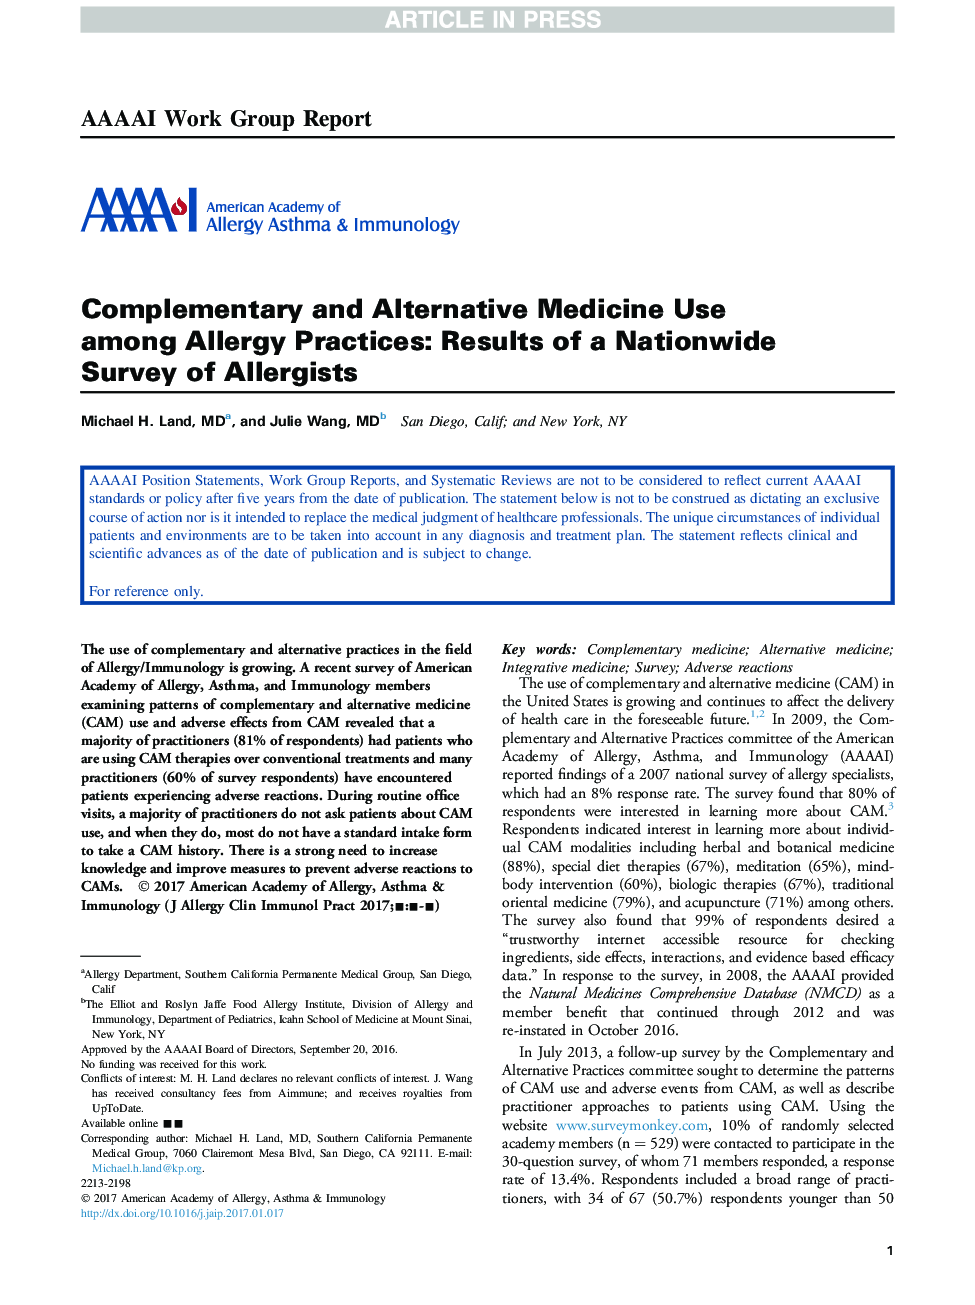 استفاده از طب مکمل و جایگزین در میان اقدامات آلرژی: نتایج یک بررسی عمومی در مورد آلرژیست ها 